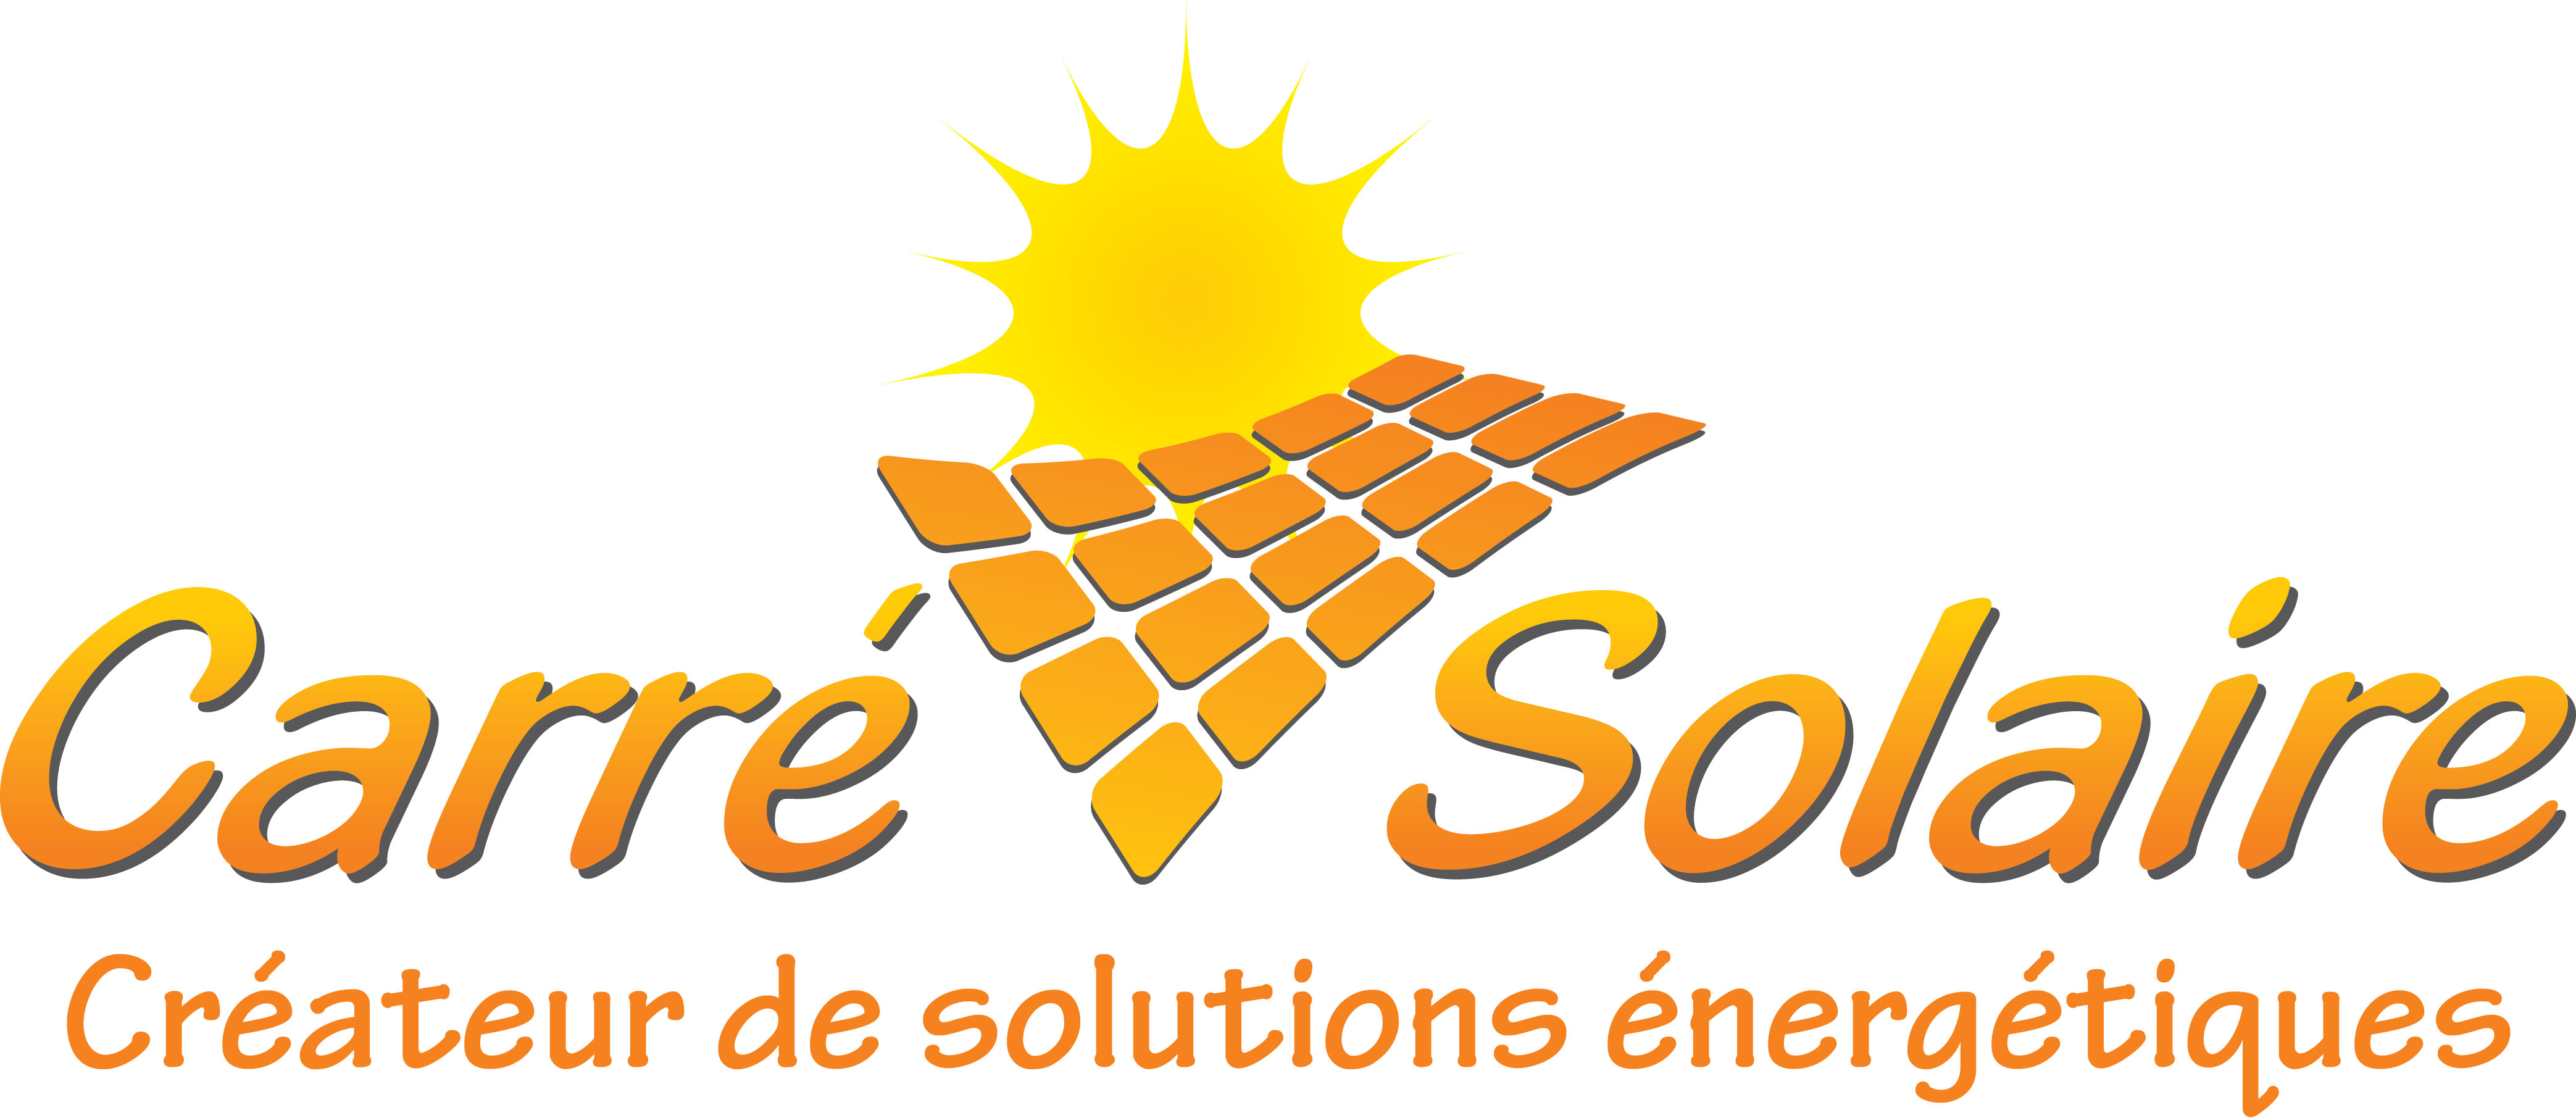 Carré Solaire - créateur de solutions énergétiques (chauffage, climatisation, solaire, photovoltaïque, pompe à chaleur, domotique) situé à Roanne dans la Loire en Auvergne-Rhône-Alpes